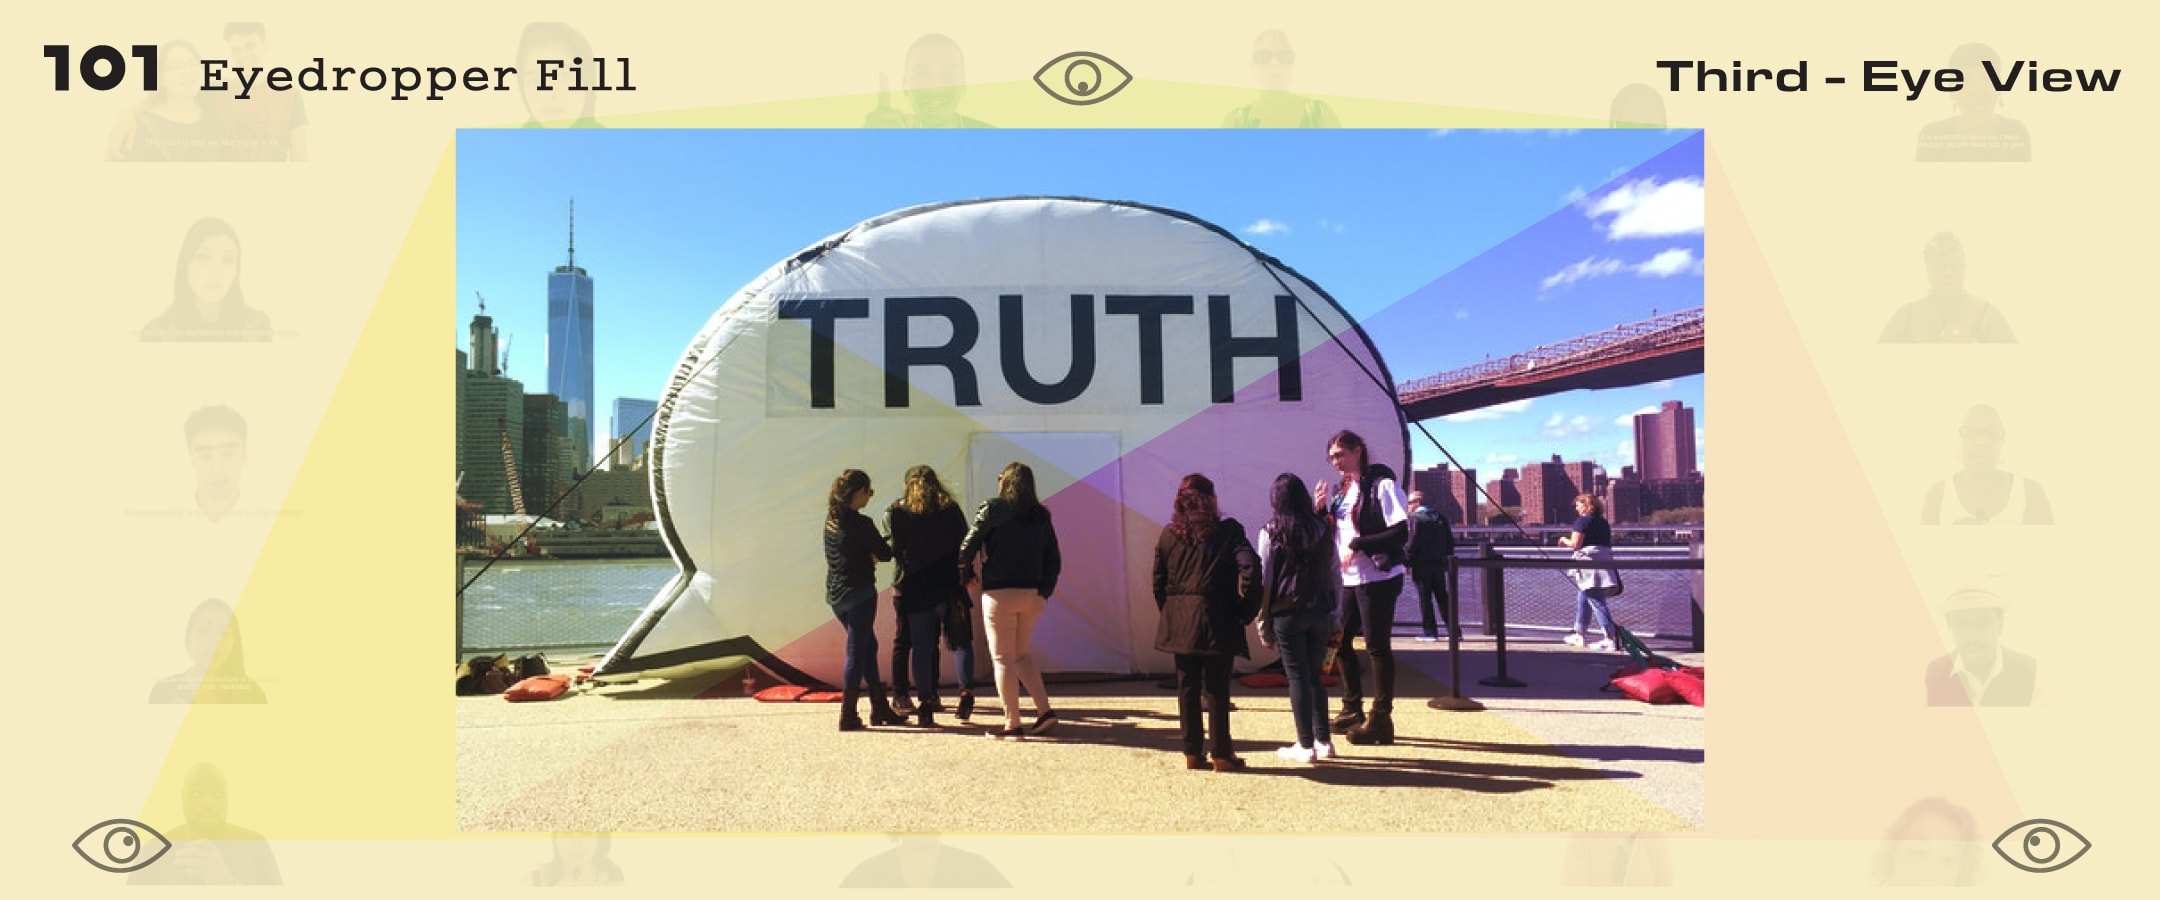 The Truth Booth : พื้นที่ปลอดภัยสำหรับใครที่พร้อมพูด ‘ความจริง’